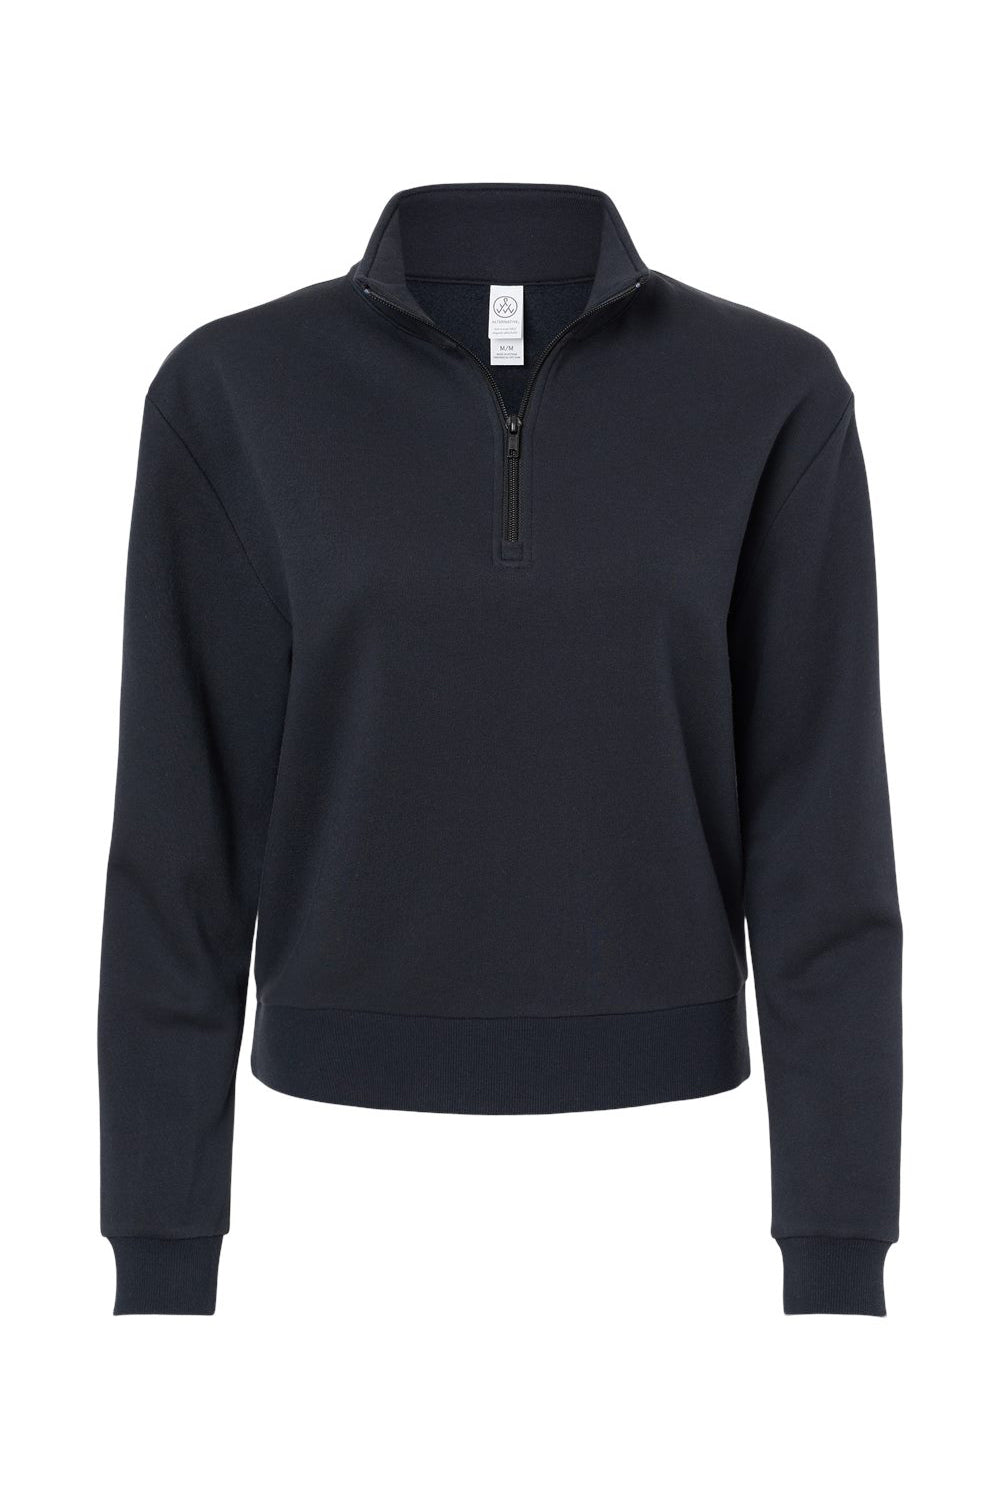 Alternative 8808PF Womens Eco Cozy Fleece Mock Neck 1/4 Zip Sweatshirt Black Flat Front